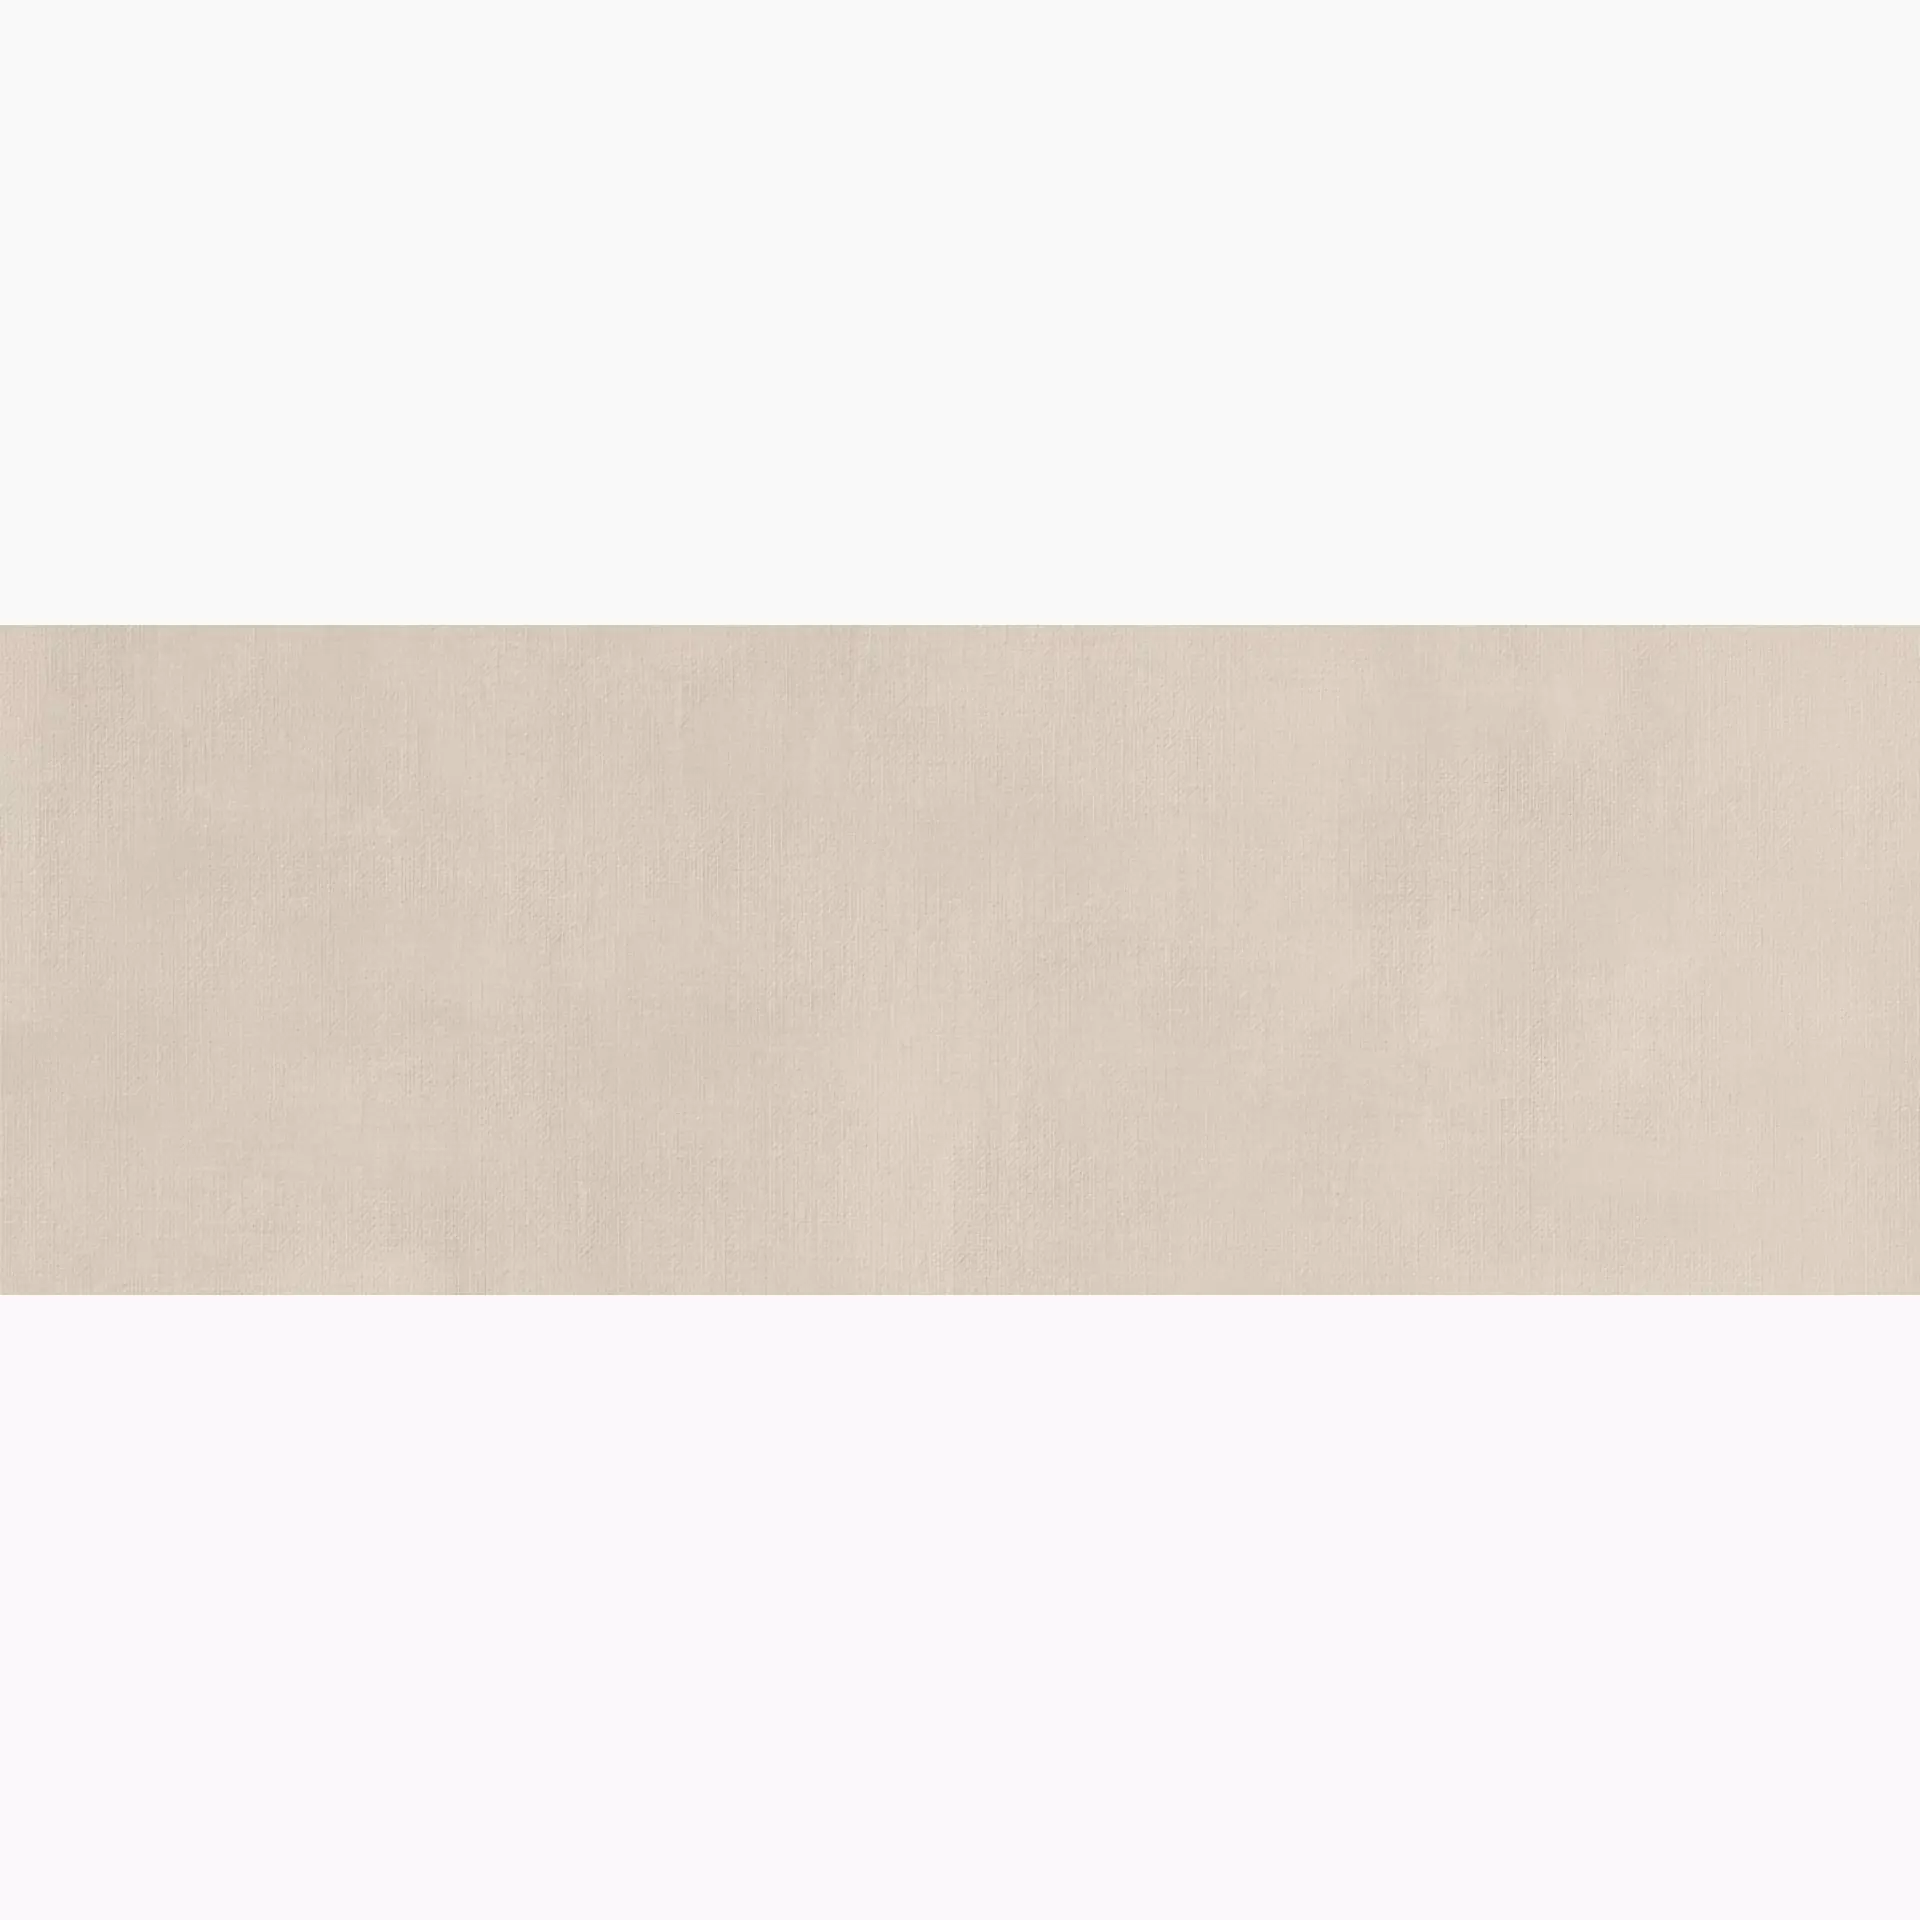 Wandfliese Marazzi Fabric Linen Naturale – Matt Linen MQUS matt natur 40x120cm rektifiziert 6mm